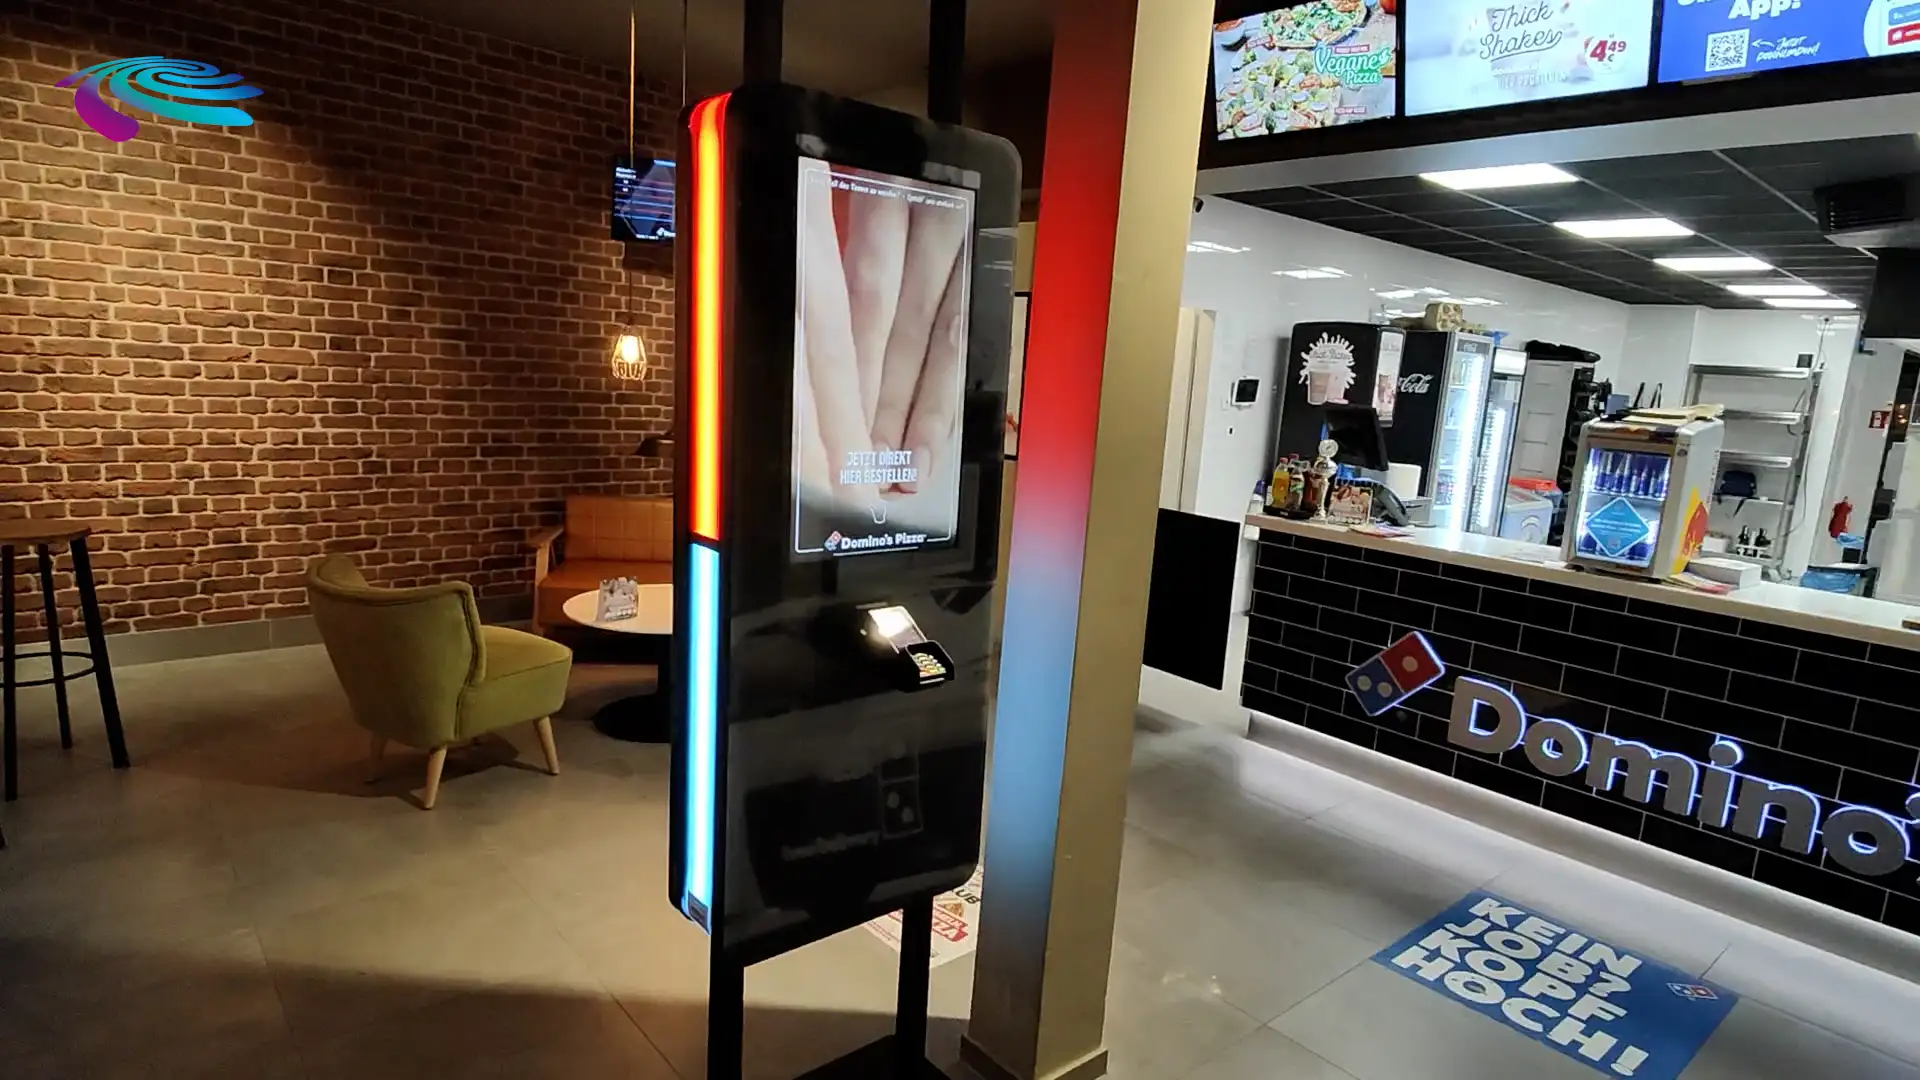 Prestop Self-Service Kiosk Domino's Pizza installation video